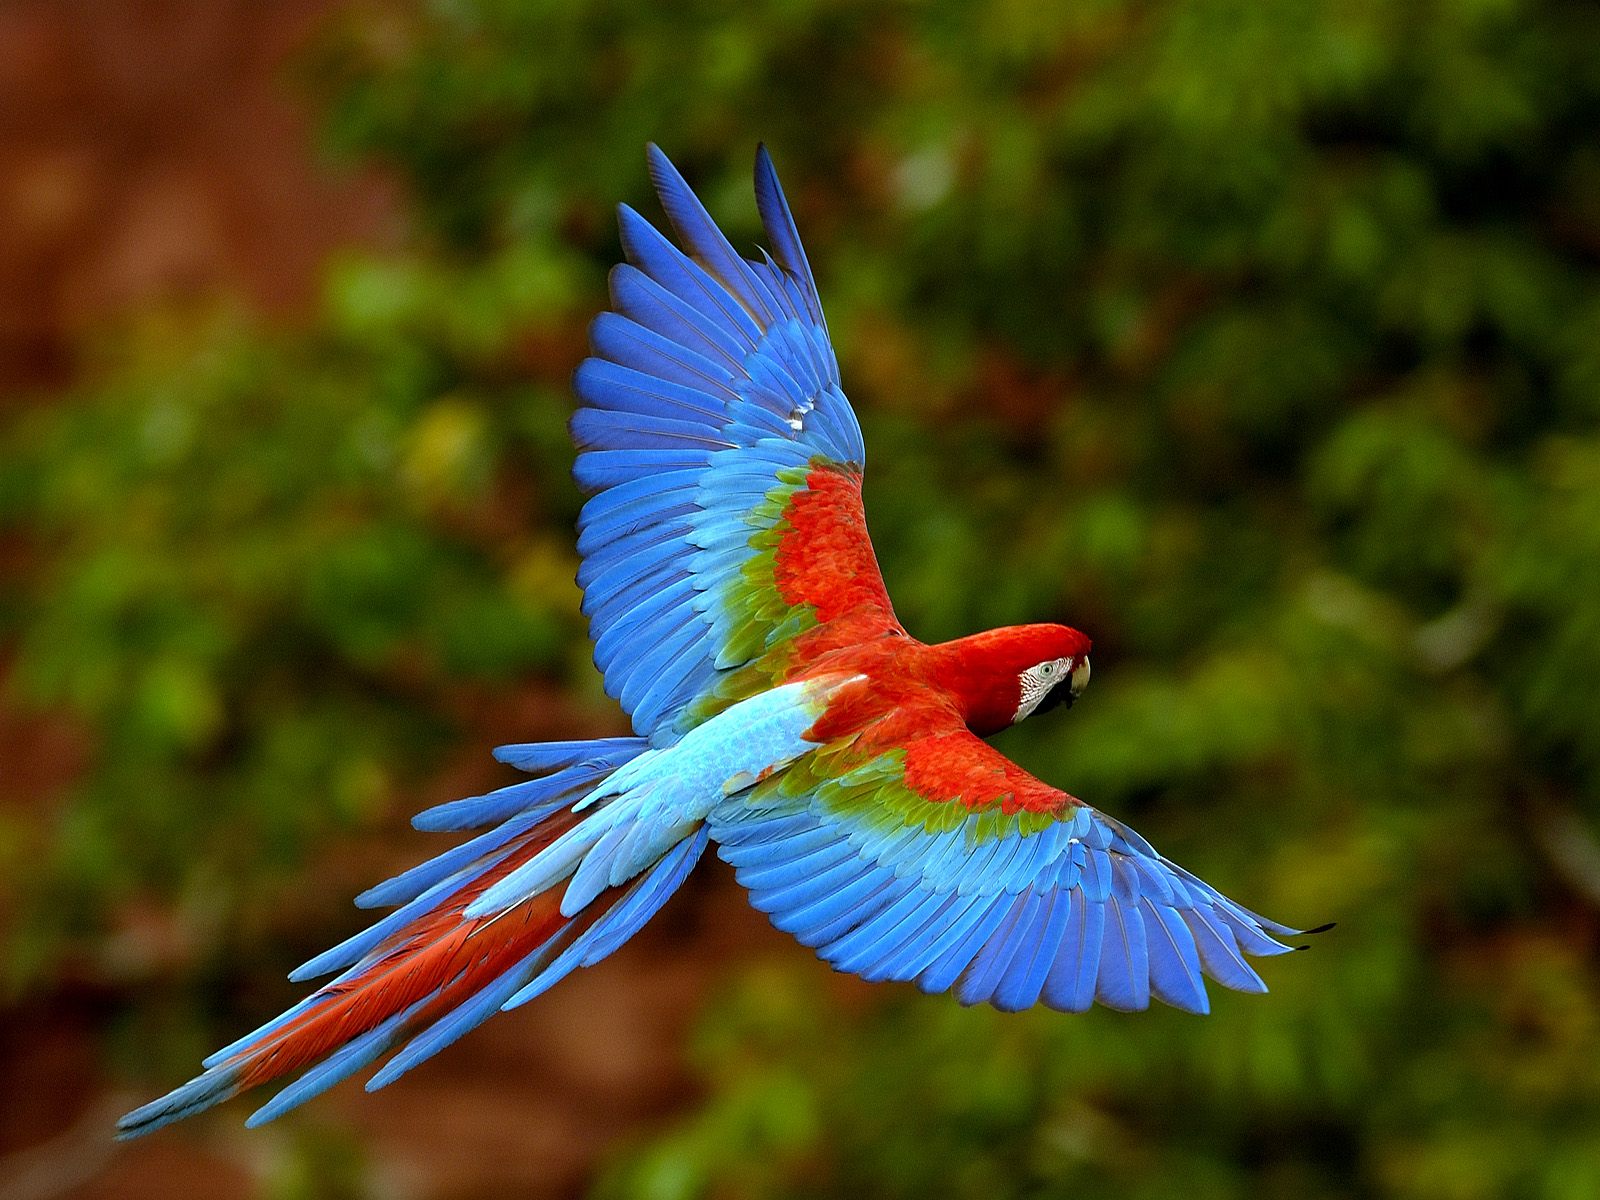 mobile desktop background hd photos of australian parrots